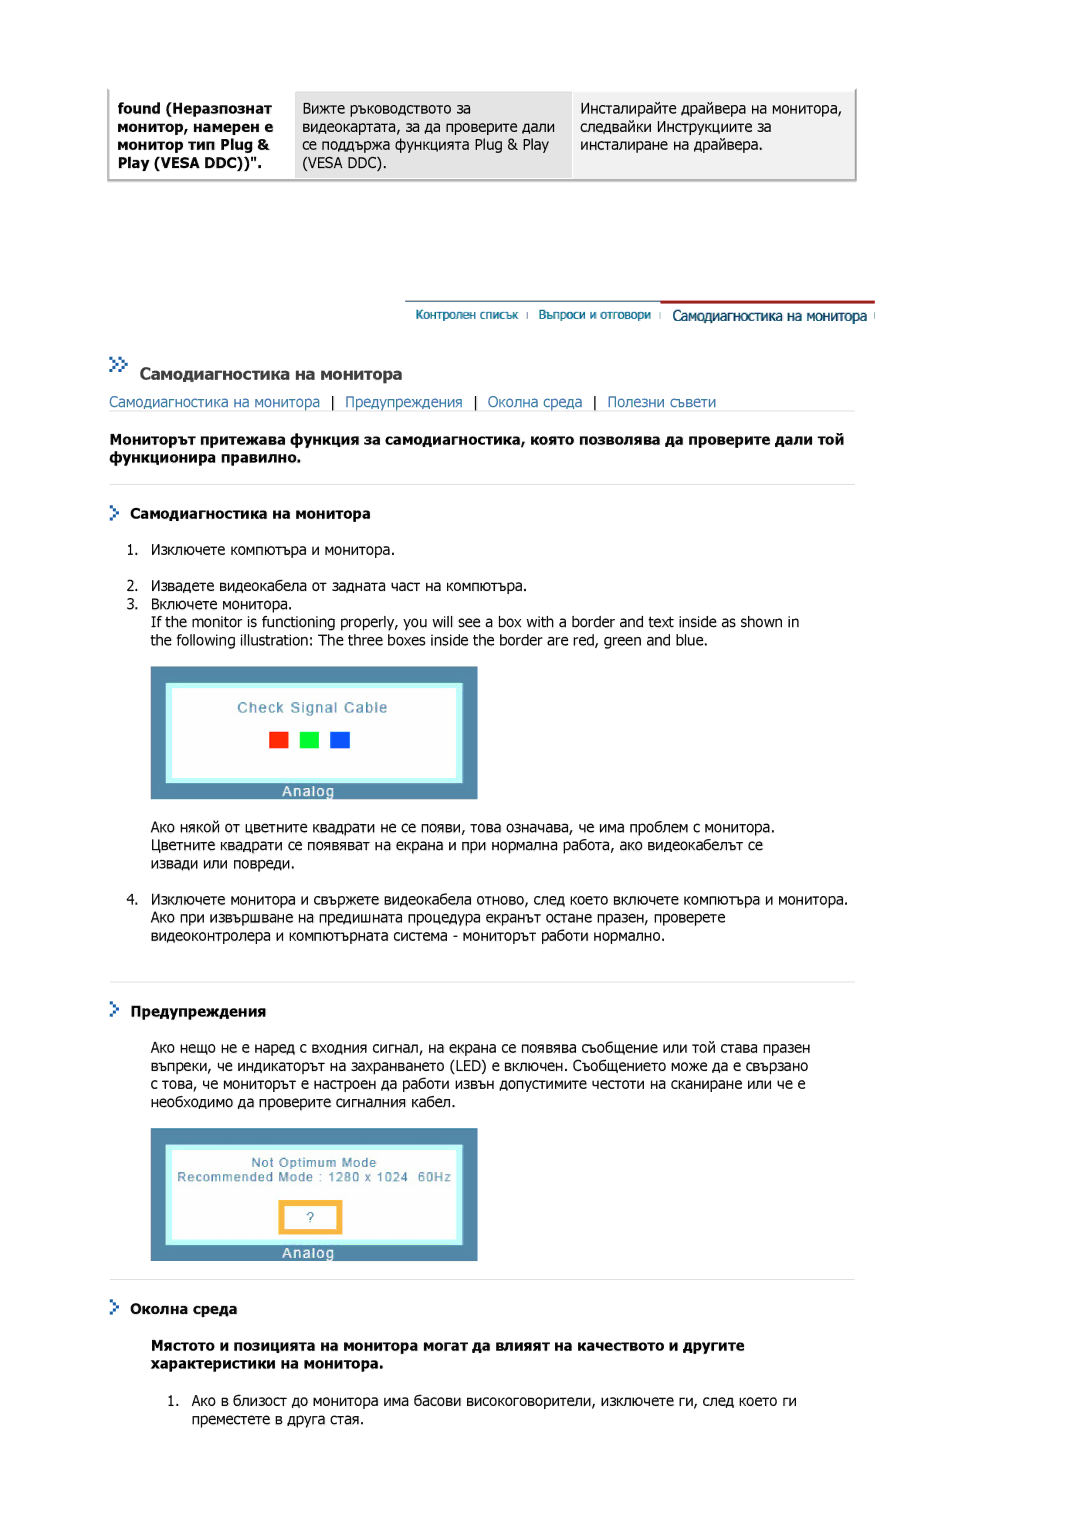 Samsung MJ19ESKSB/EDC, MJ19ESTSB/EDC manual Самодиагностика на монитора, Предупреждения 